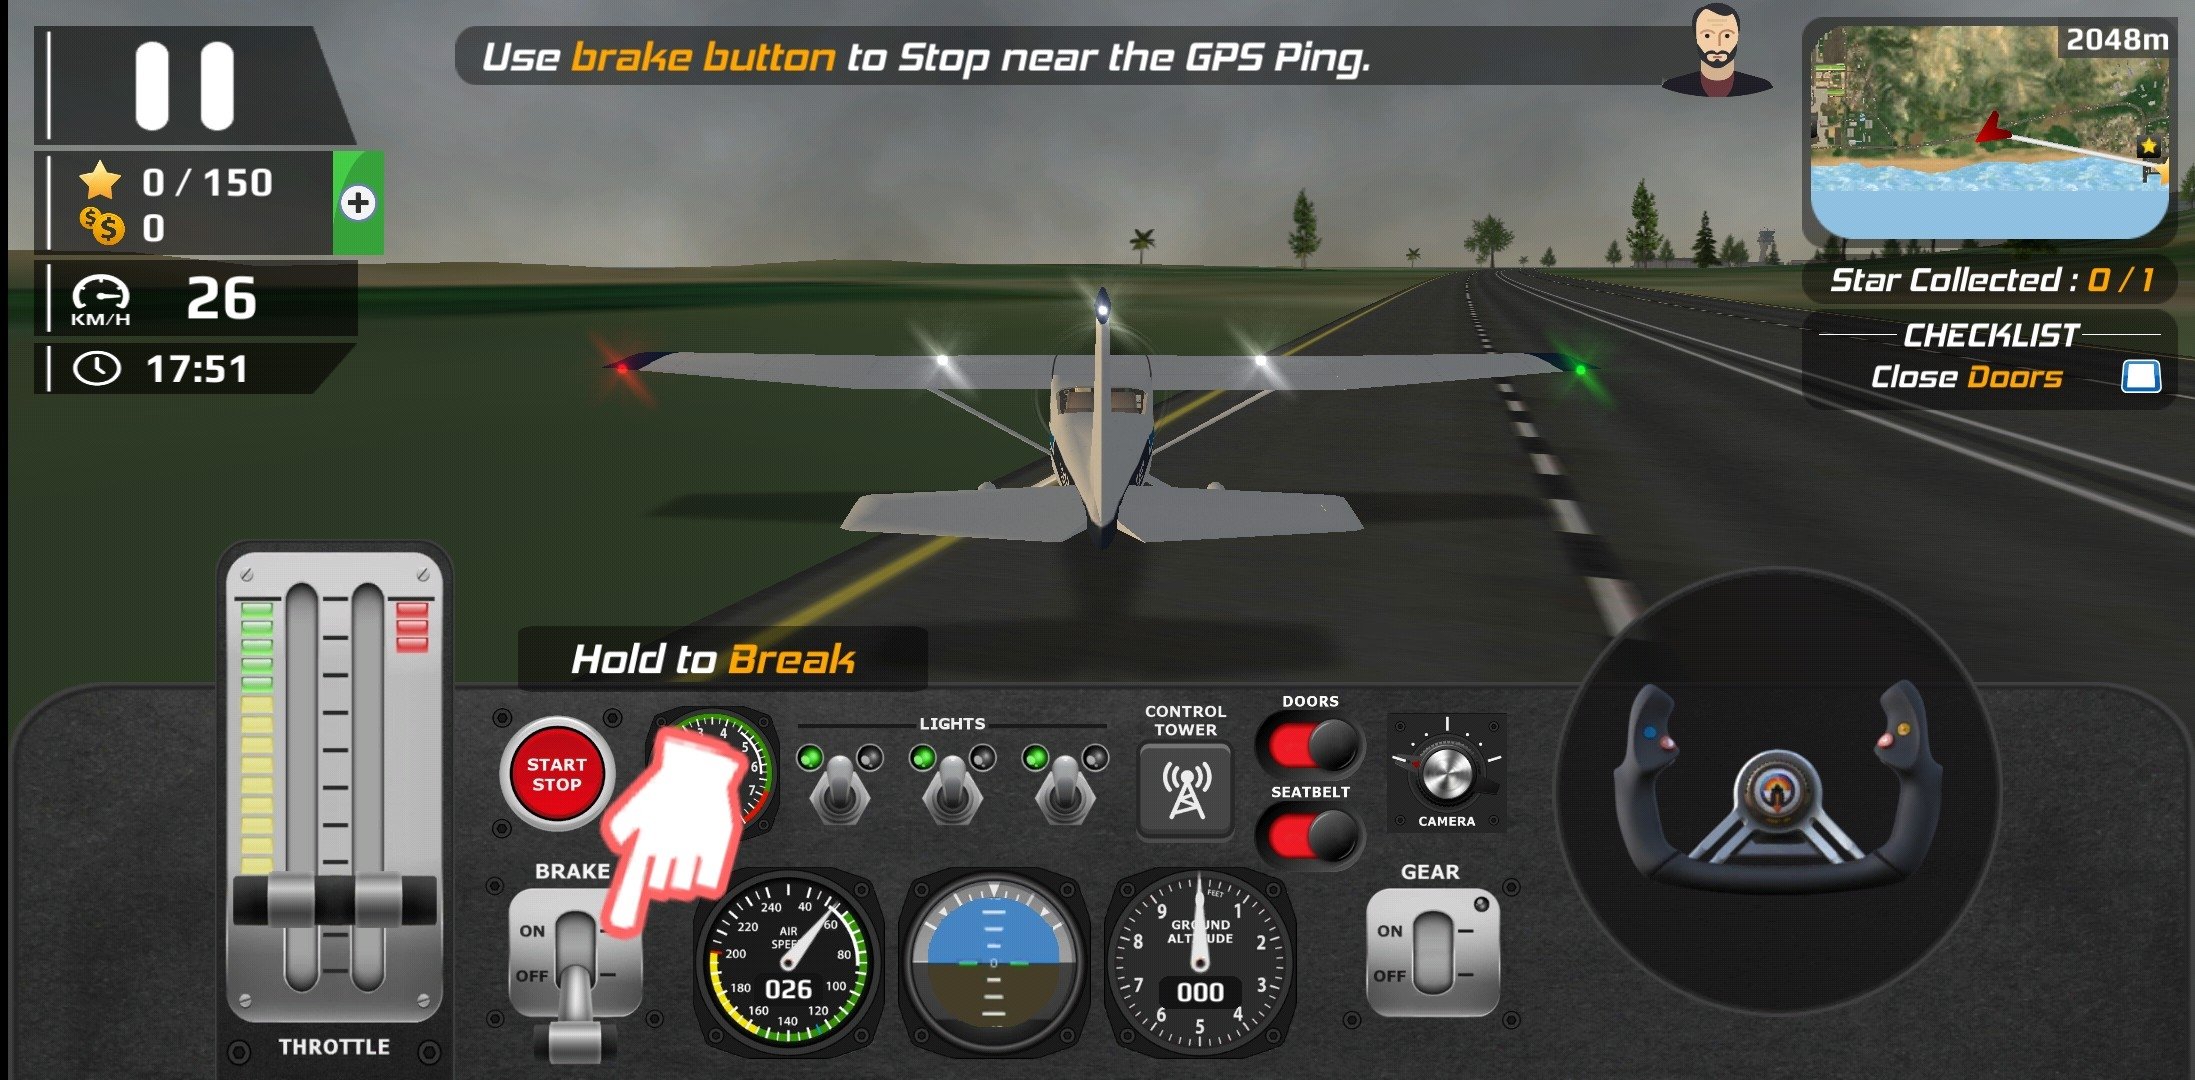 Download do APK de Jogos de avião para Android